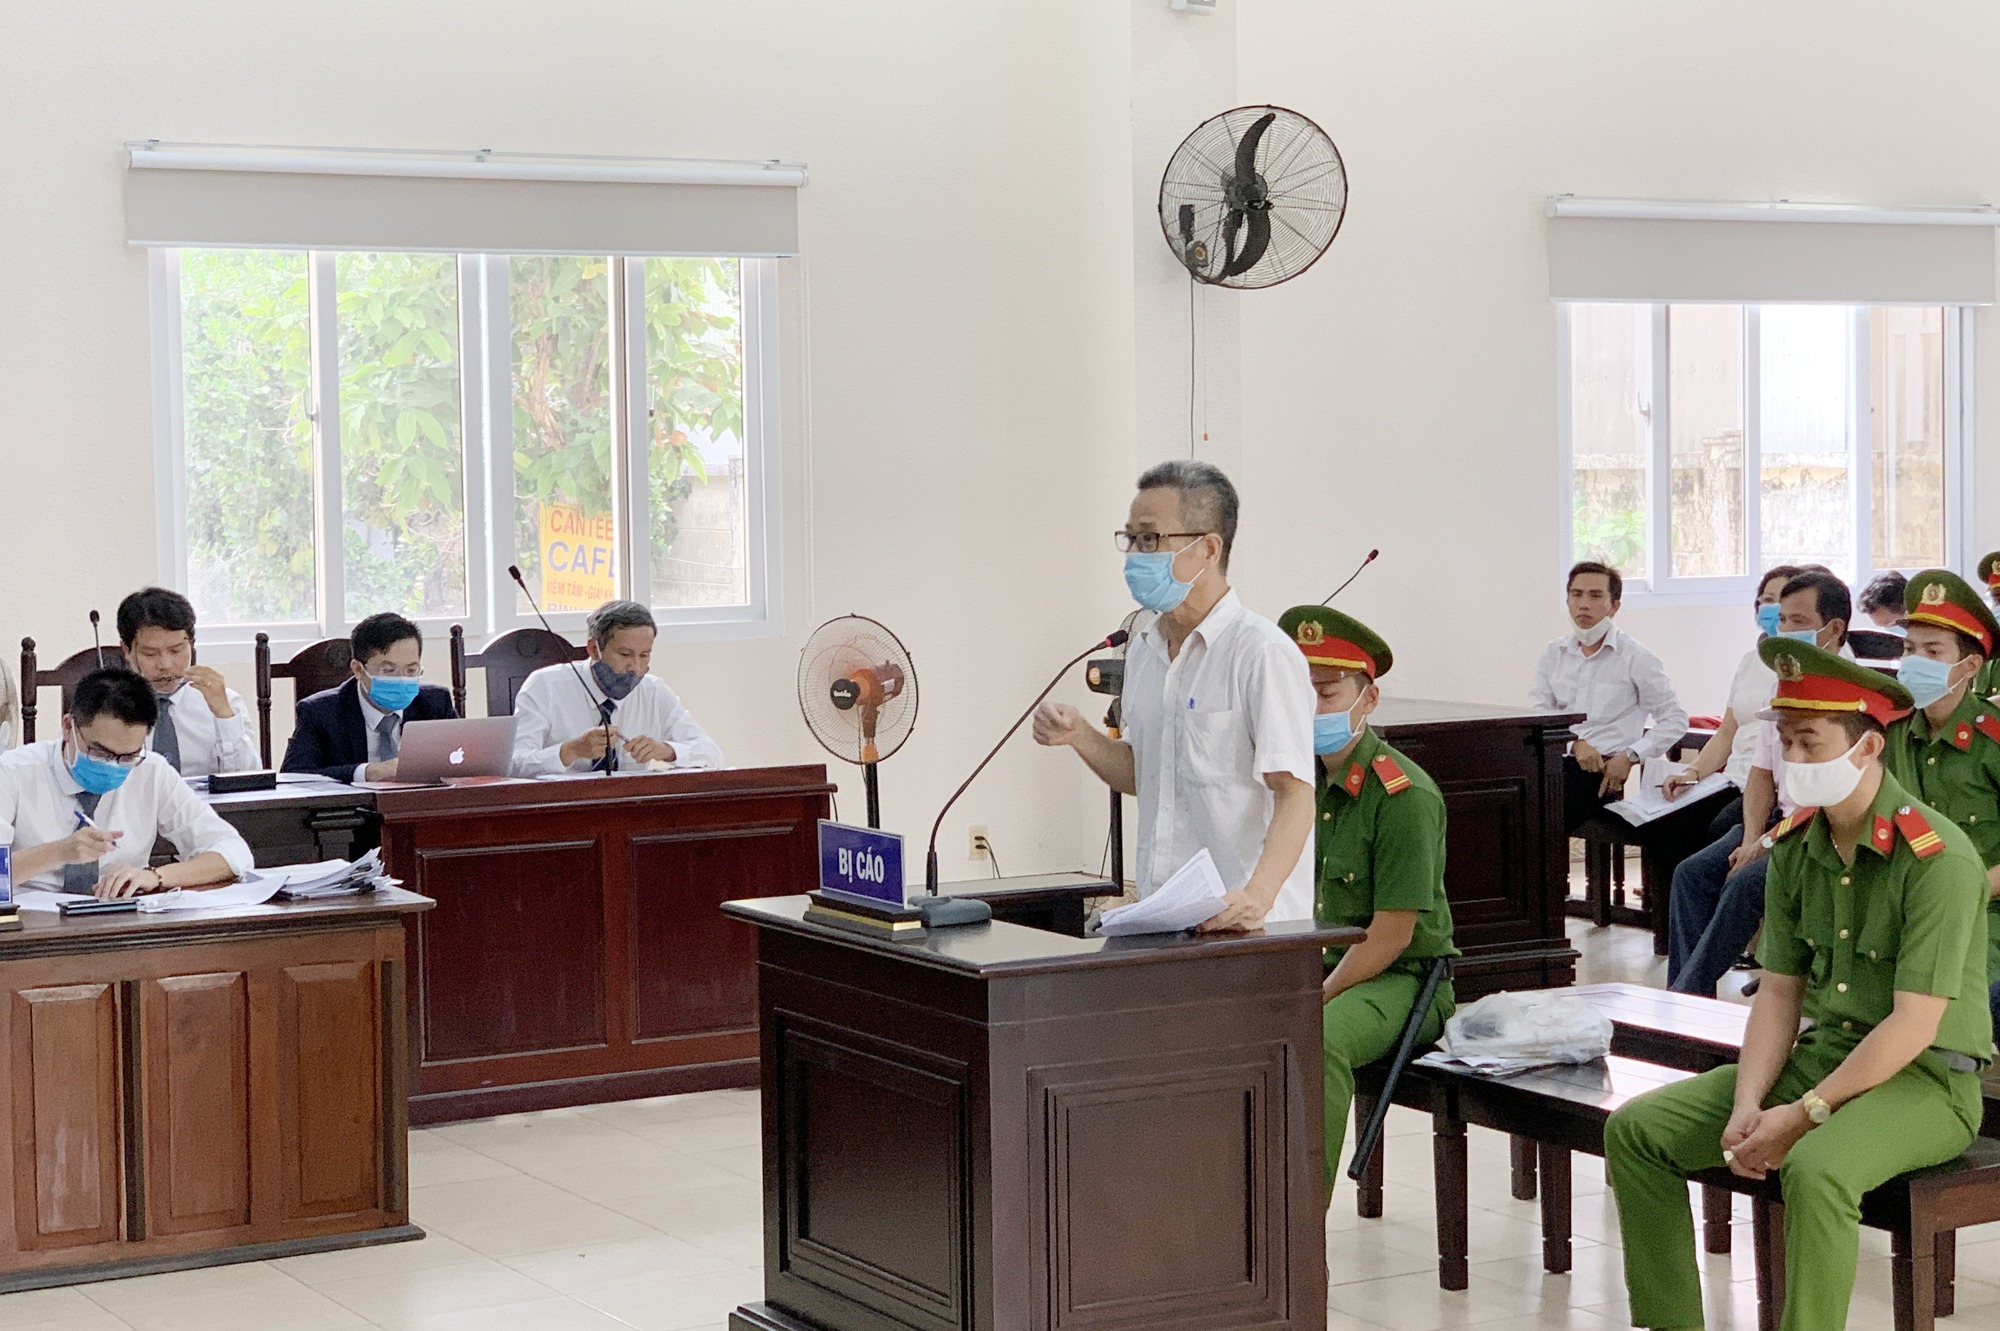 Bình Dương: Tạm đình chỉ điều tra vụ án liên quan cựu Bí thư Nguyễn Hồng Khanh - Ảnh 1.